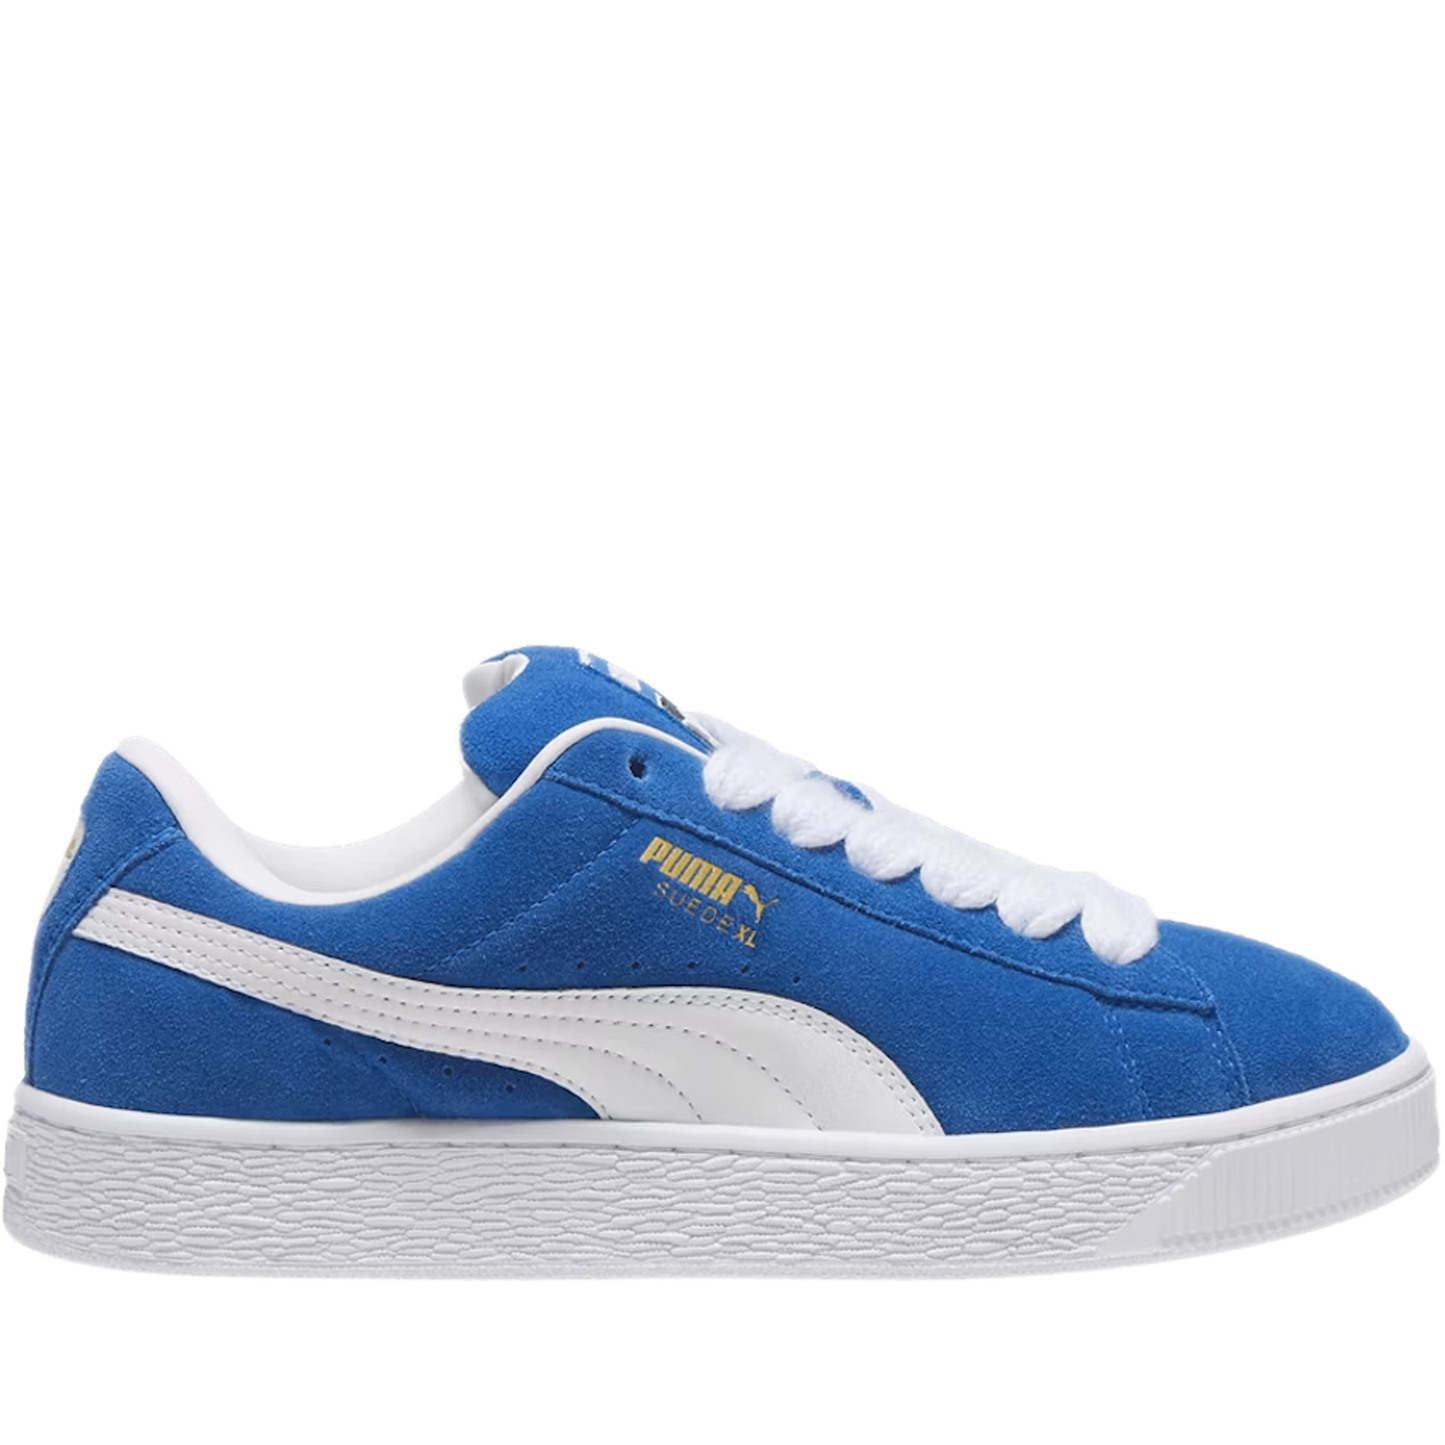 Men's Puma Suede XL Shoes - Blue/ White